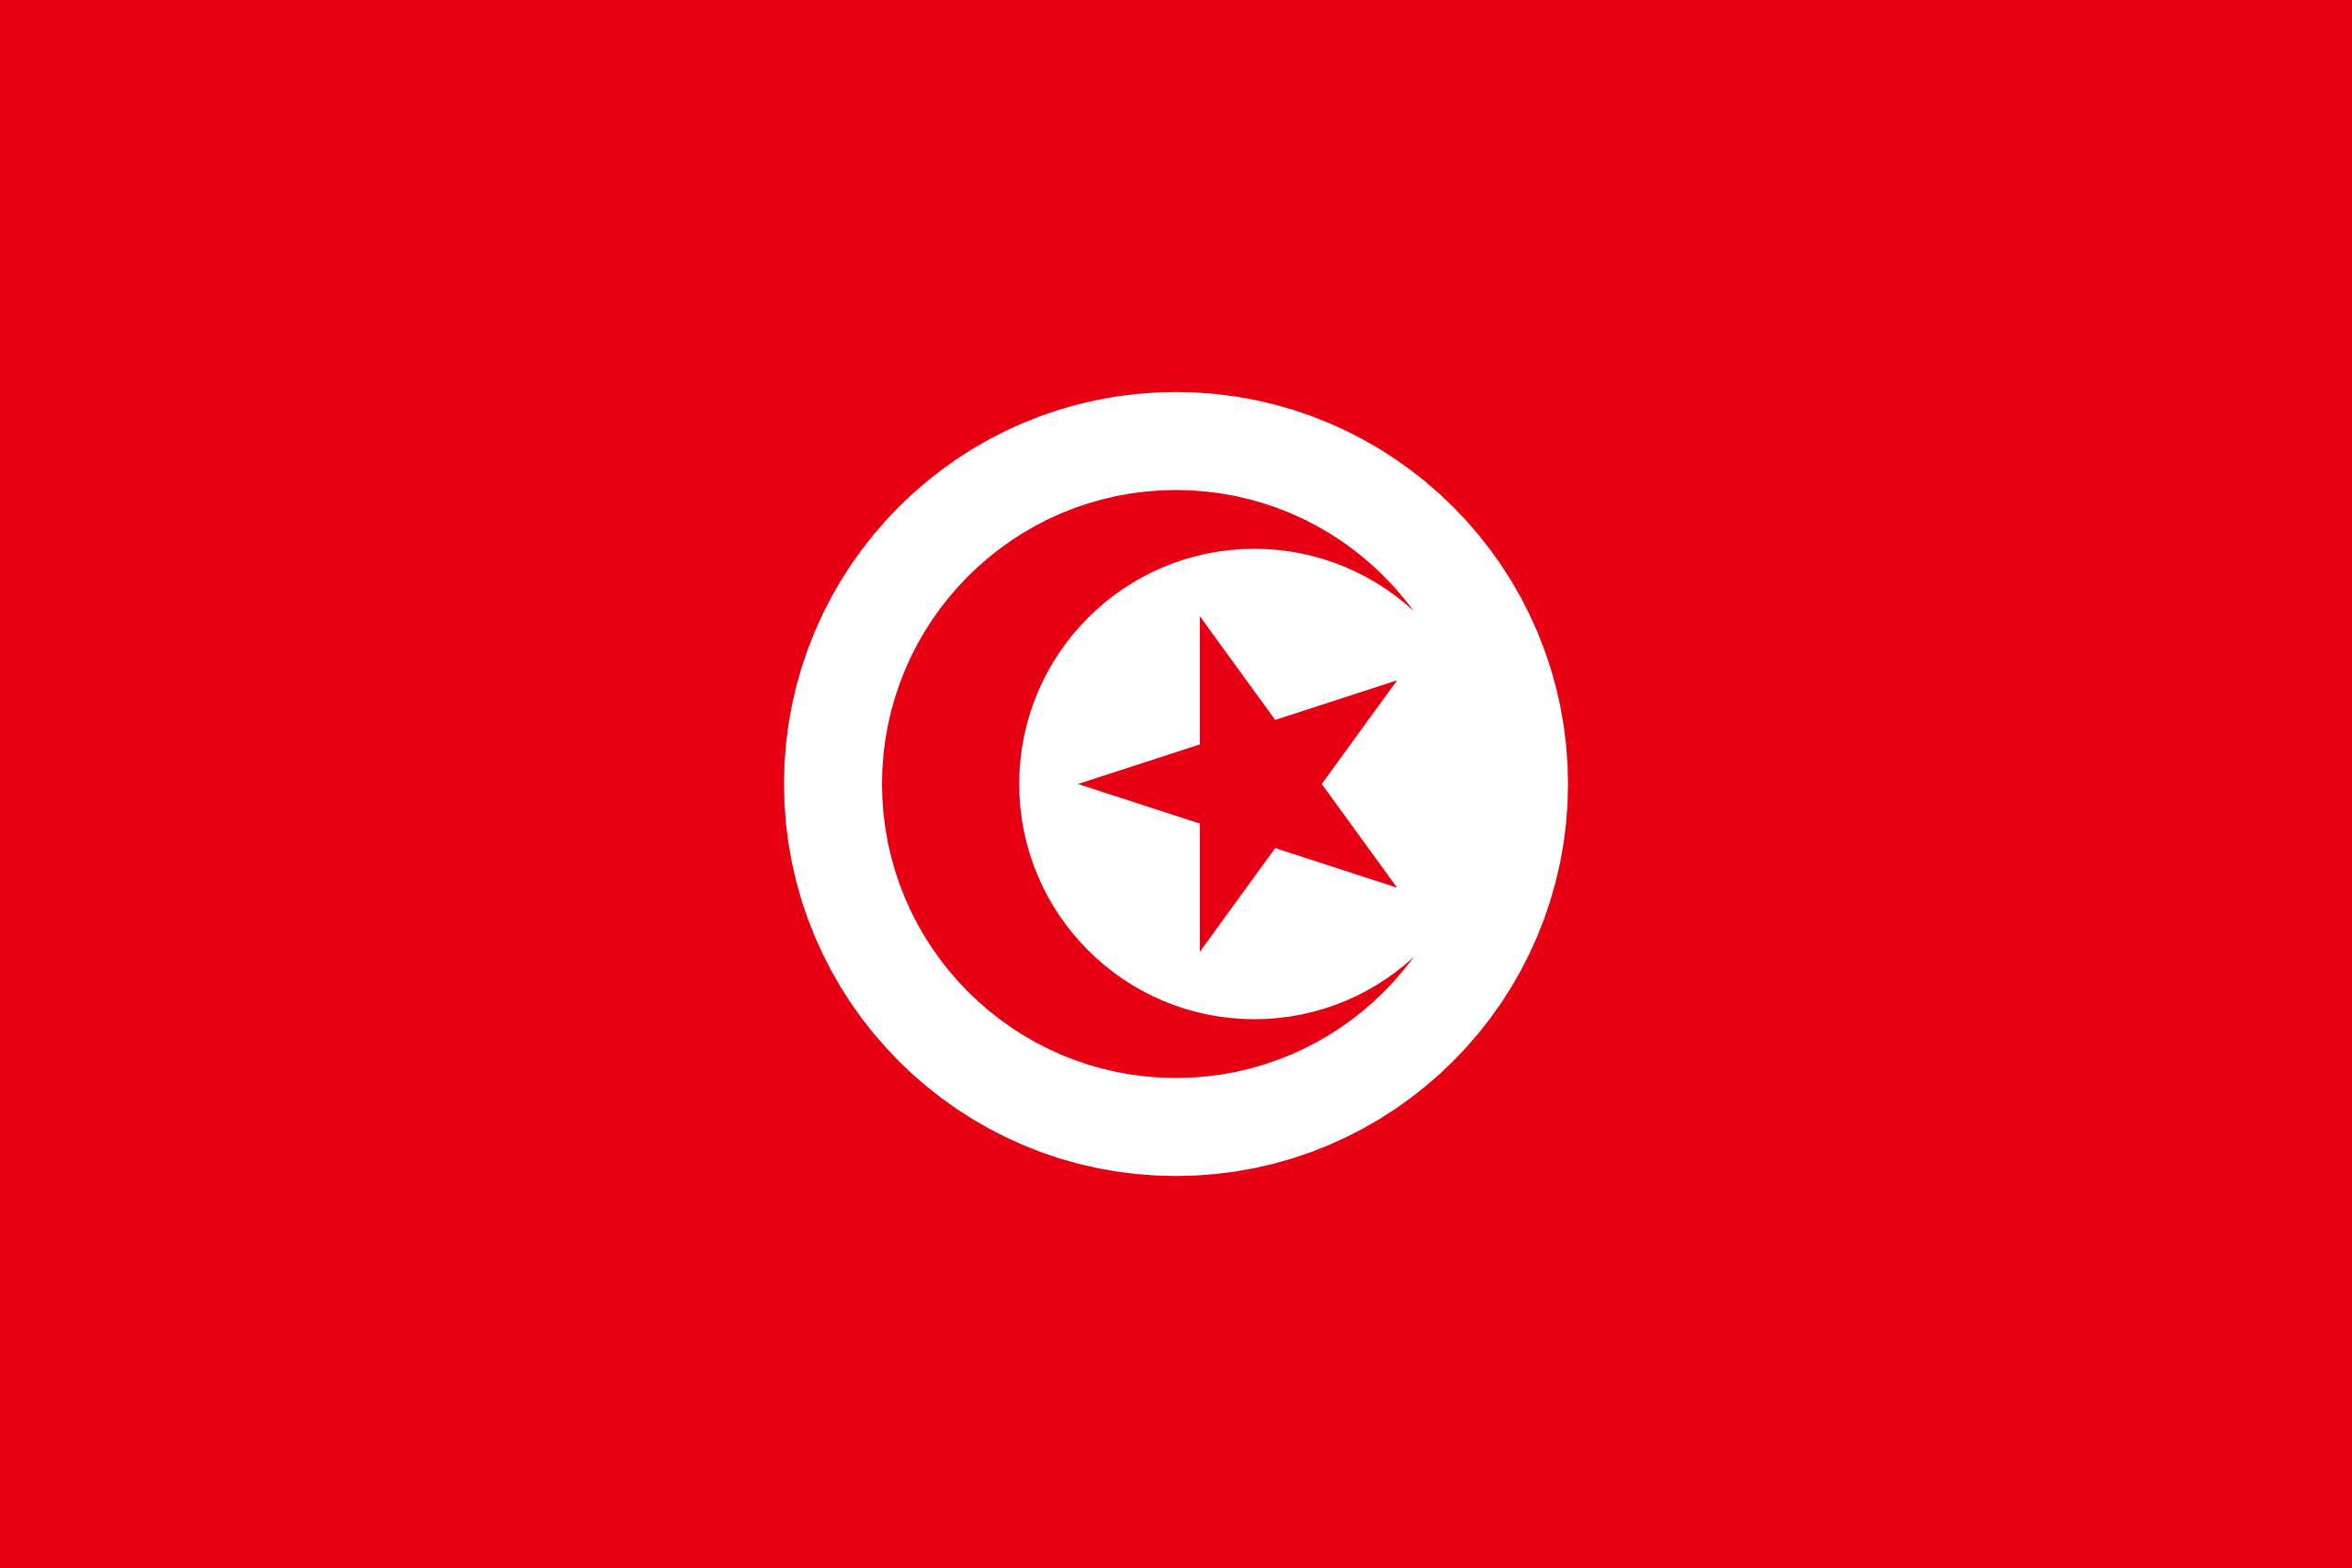 Tunisia's flag